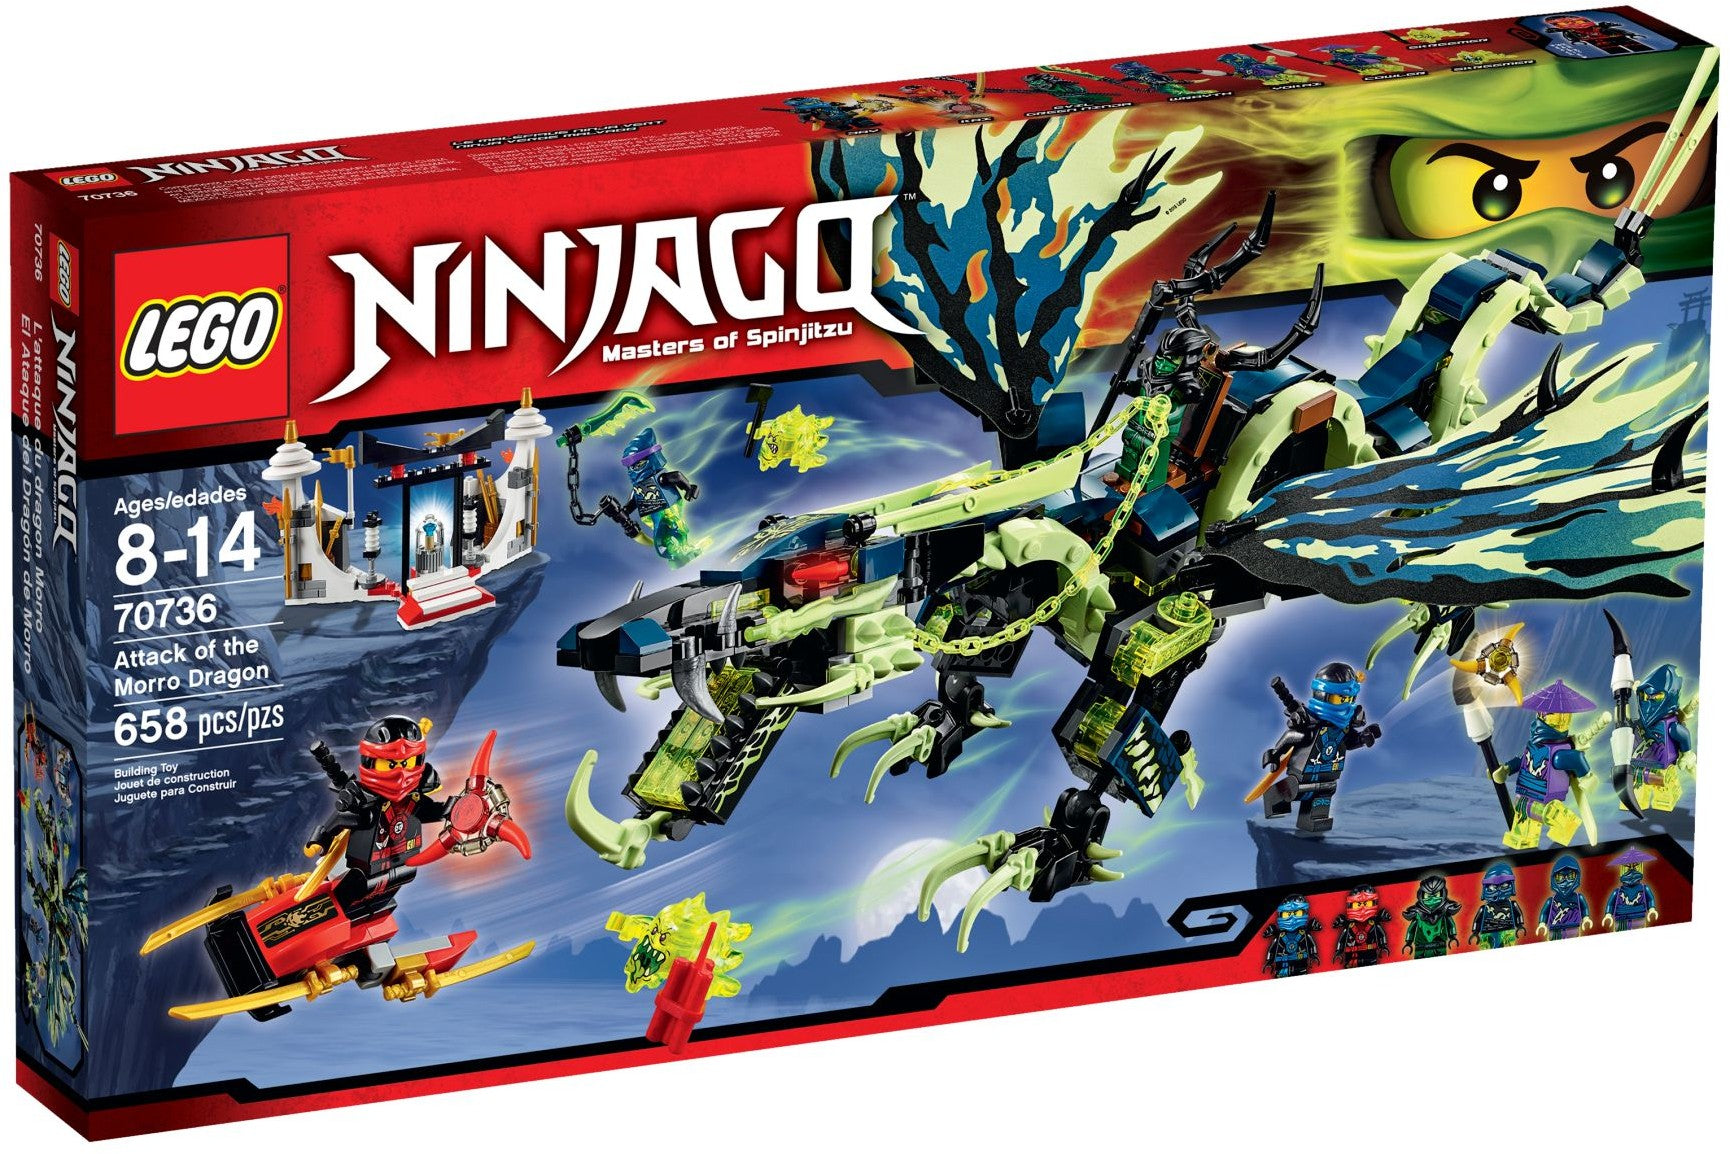 Lego Ninjago 70736 - Attack of the Morro Dragon